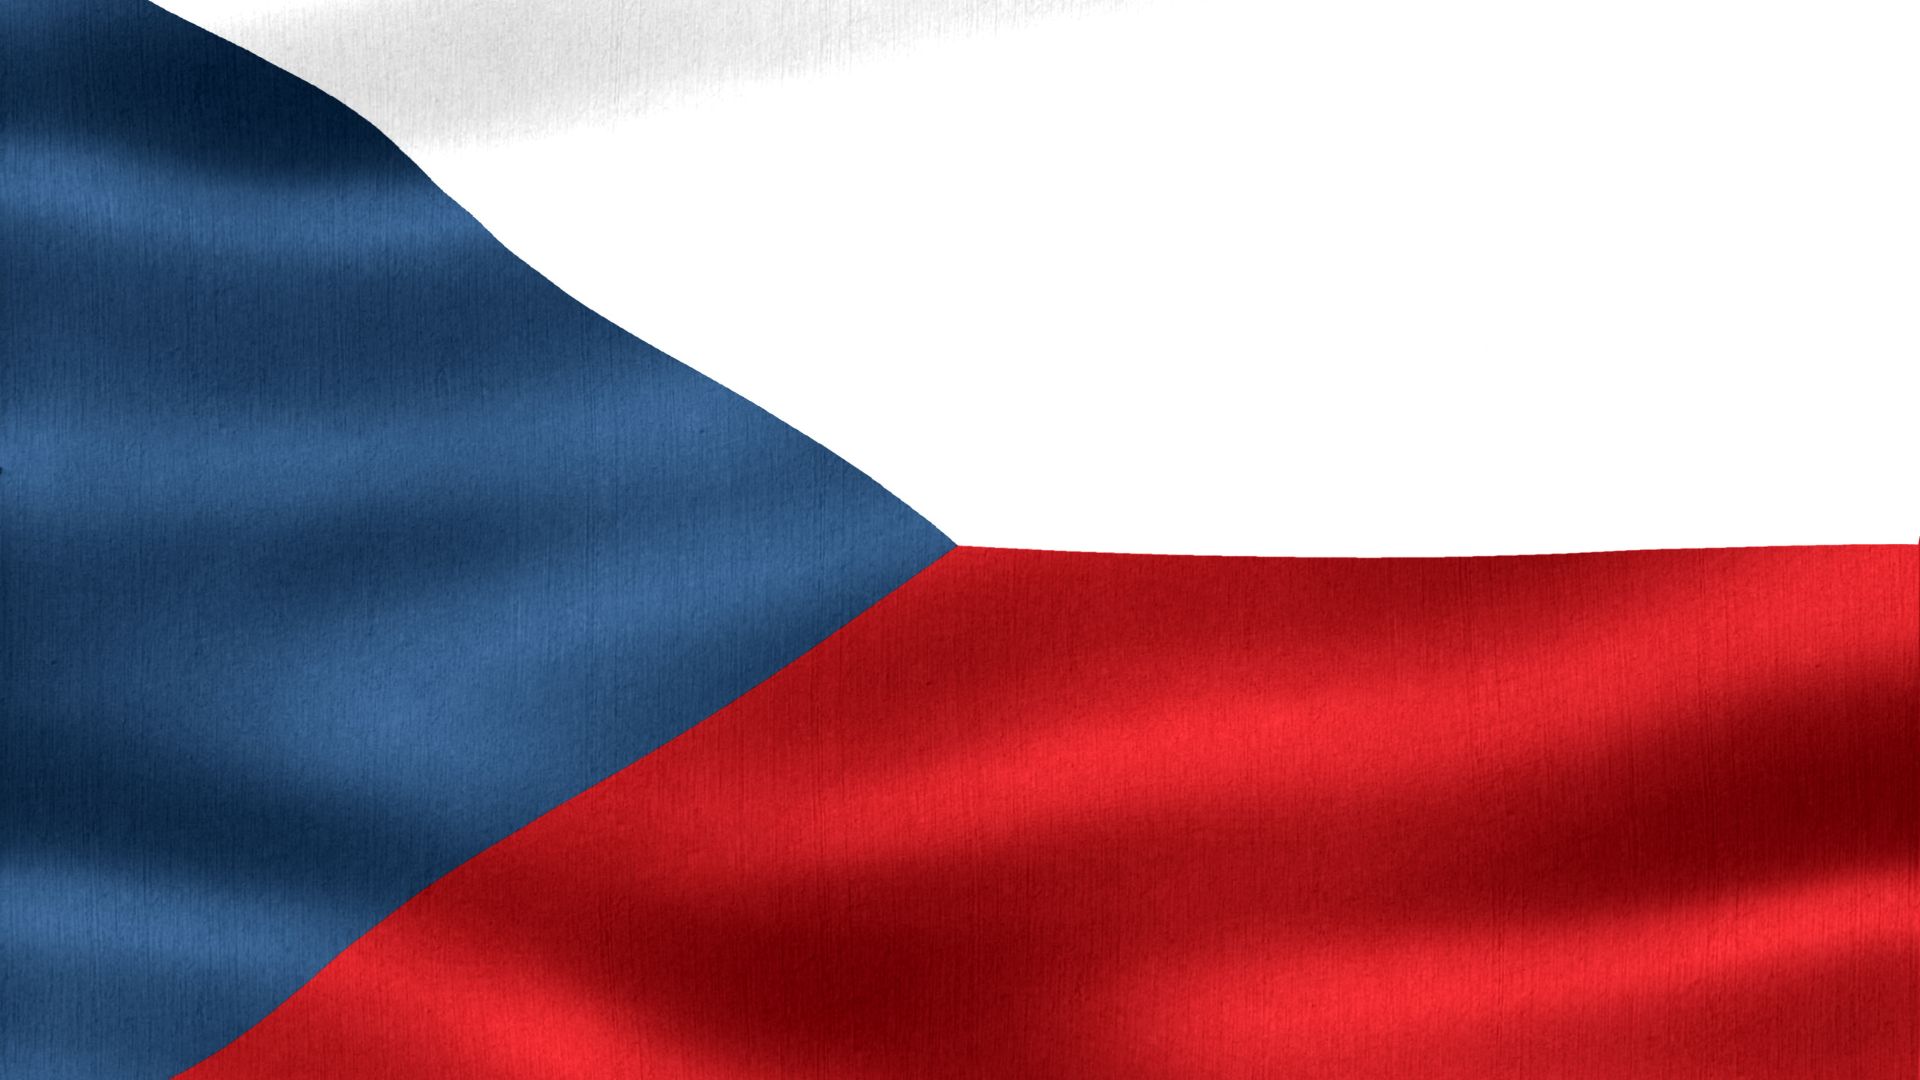 A bandeira da Chéquia, ou Tchéquia, é igual à bandeira da antiga Checoslováquia (Tchecoslováquia), da qual o moderno Estado checo foi originado.